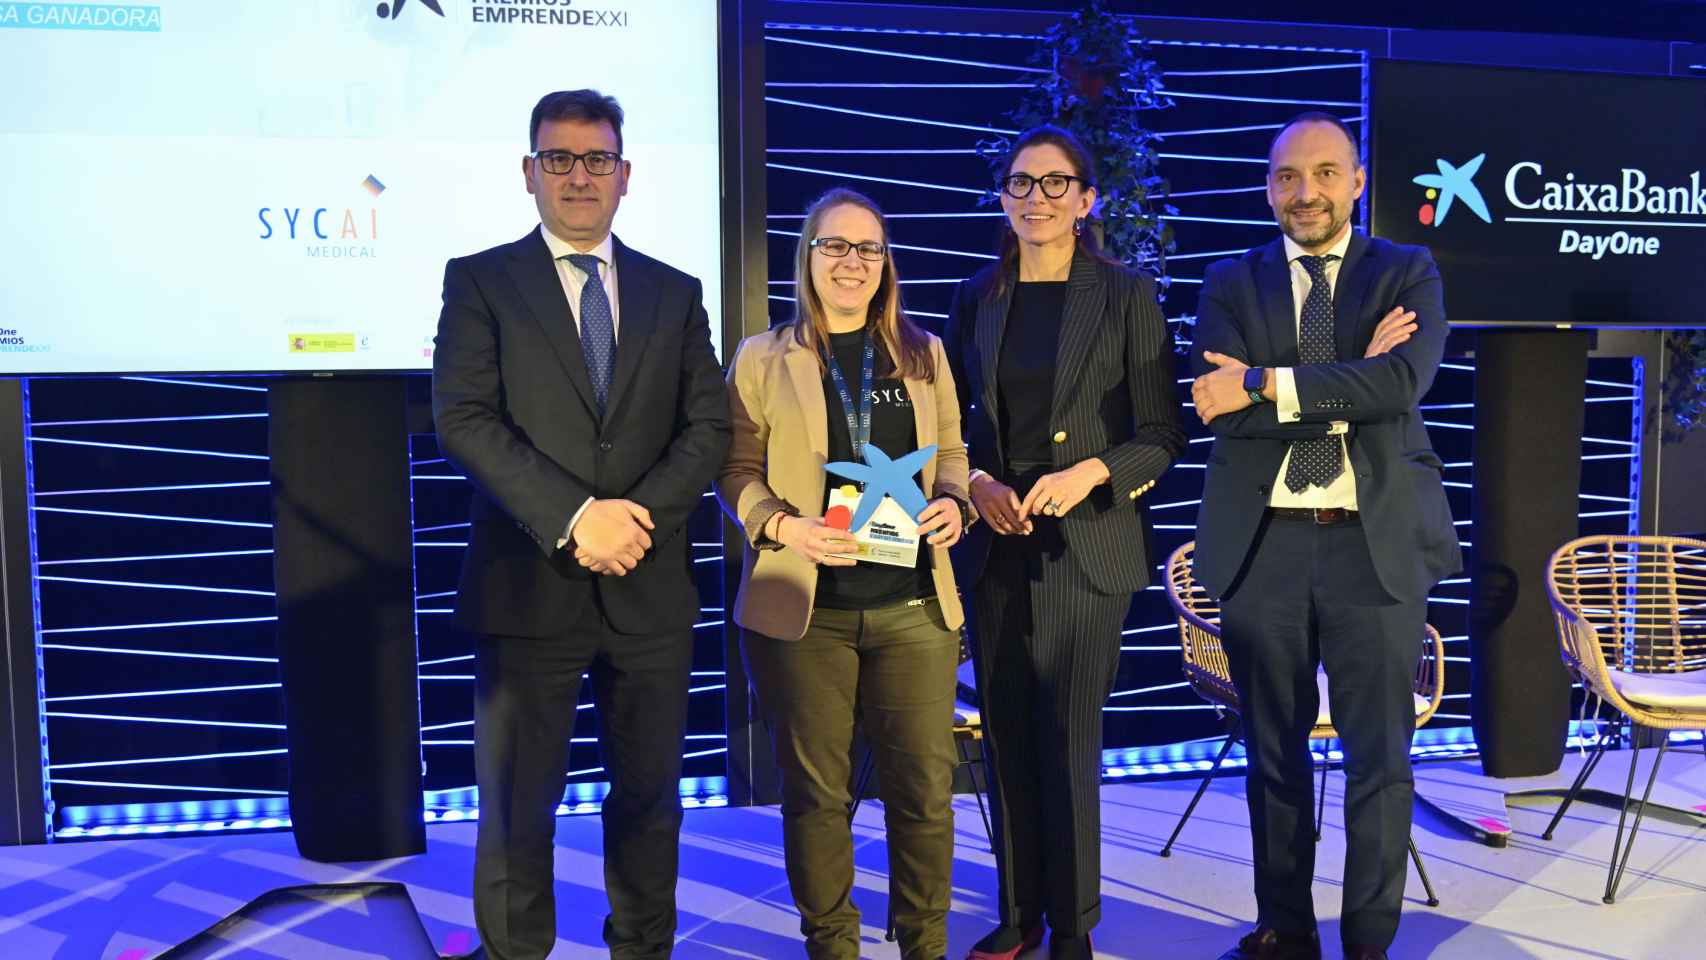 Sycai Medical ha sido reconocida como la startup más innovadora de Cataluña en los Premios EmprendeXXI